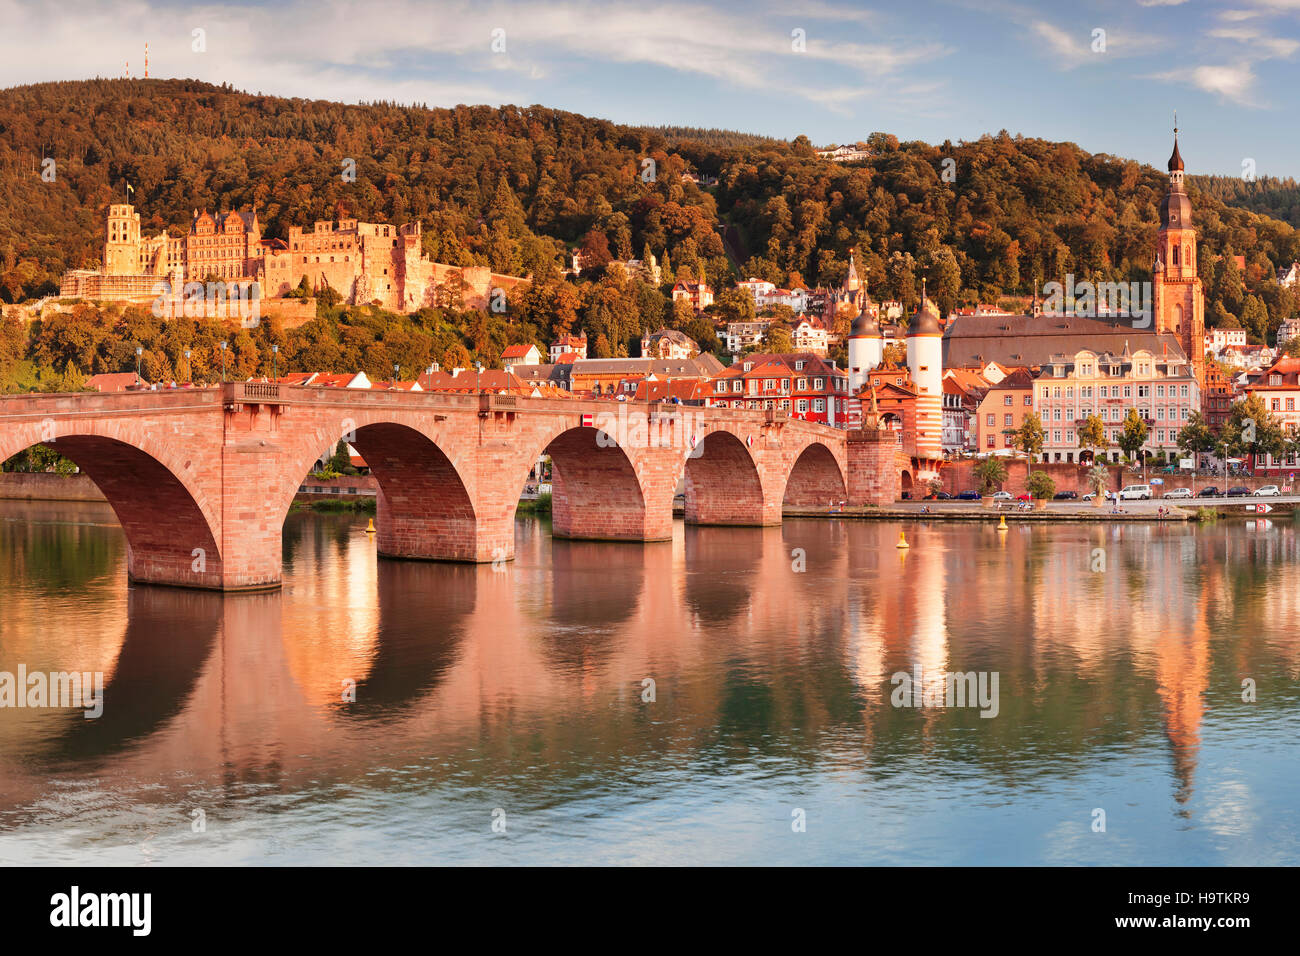 Vista de Karl Theodor Bridge y el portón sobre el río Neckar con el castillo de Heidelberg, Baden-Württemberg, alemán Foto de stock